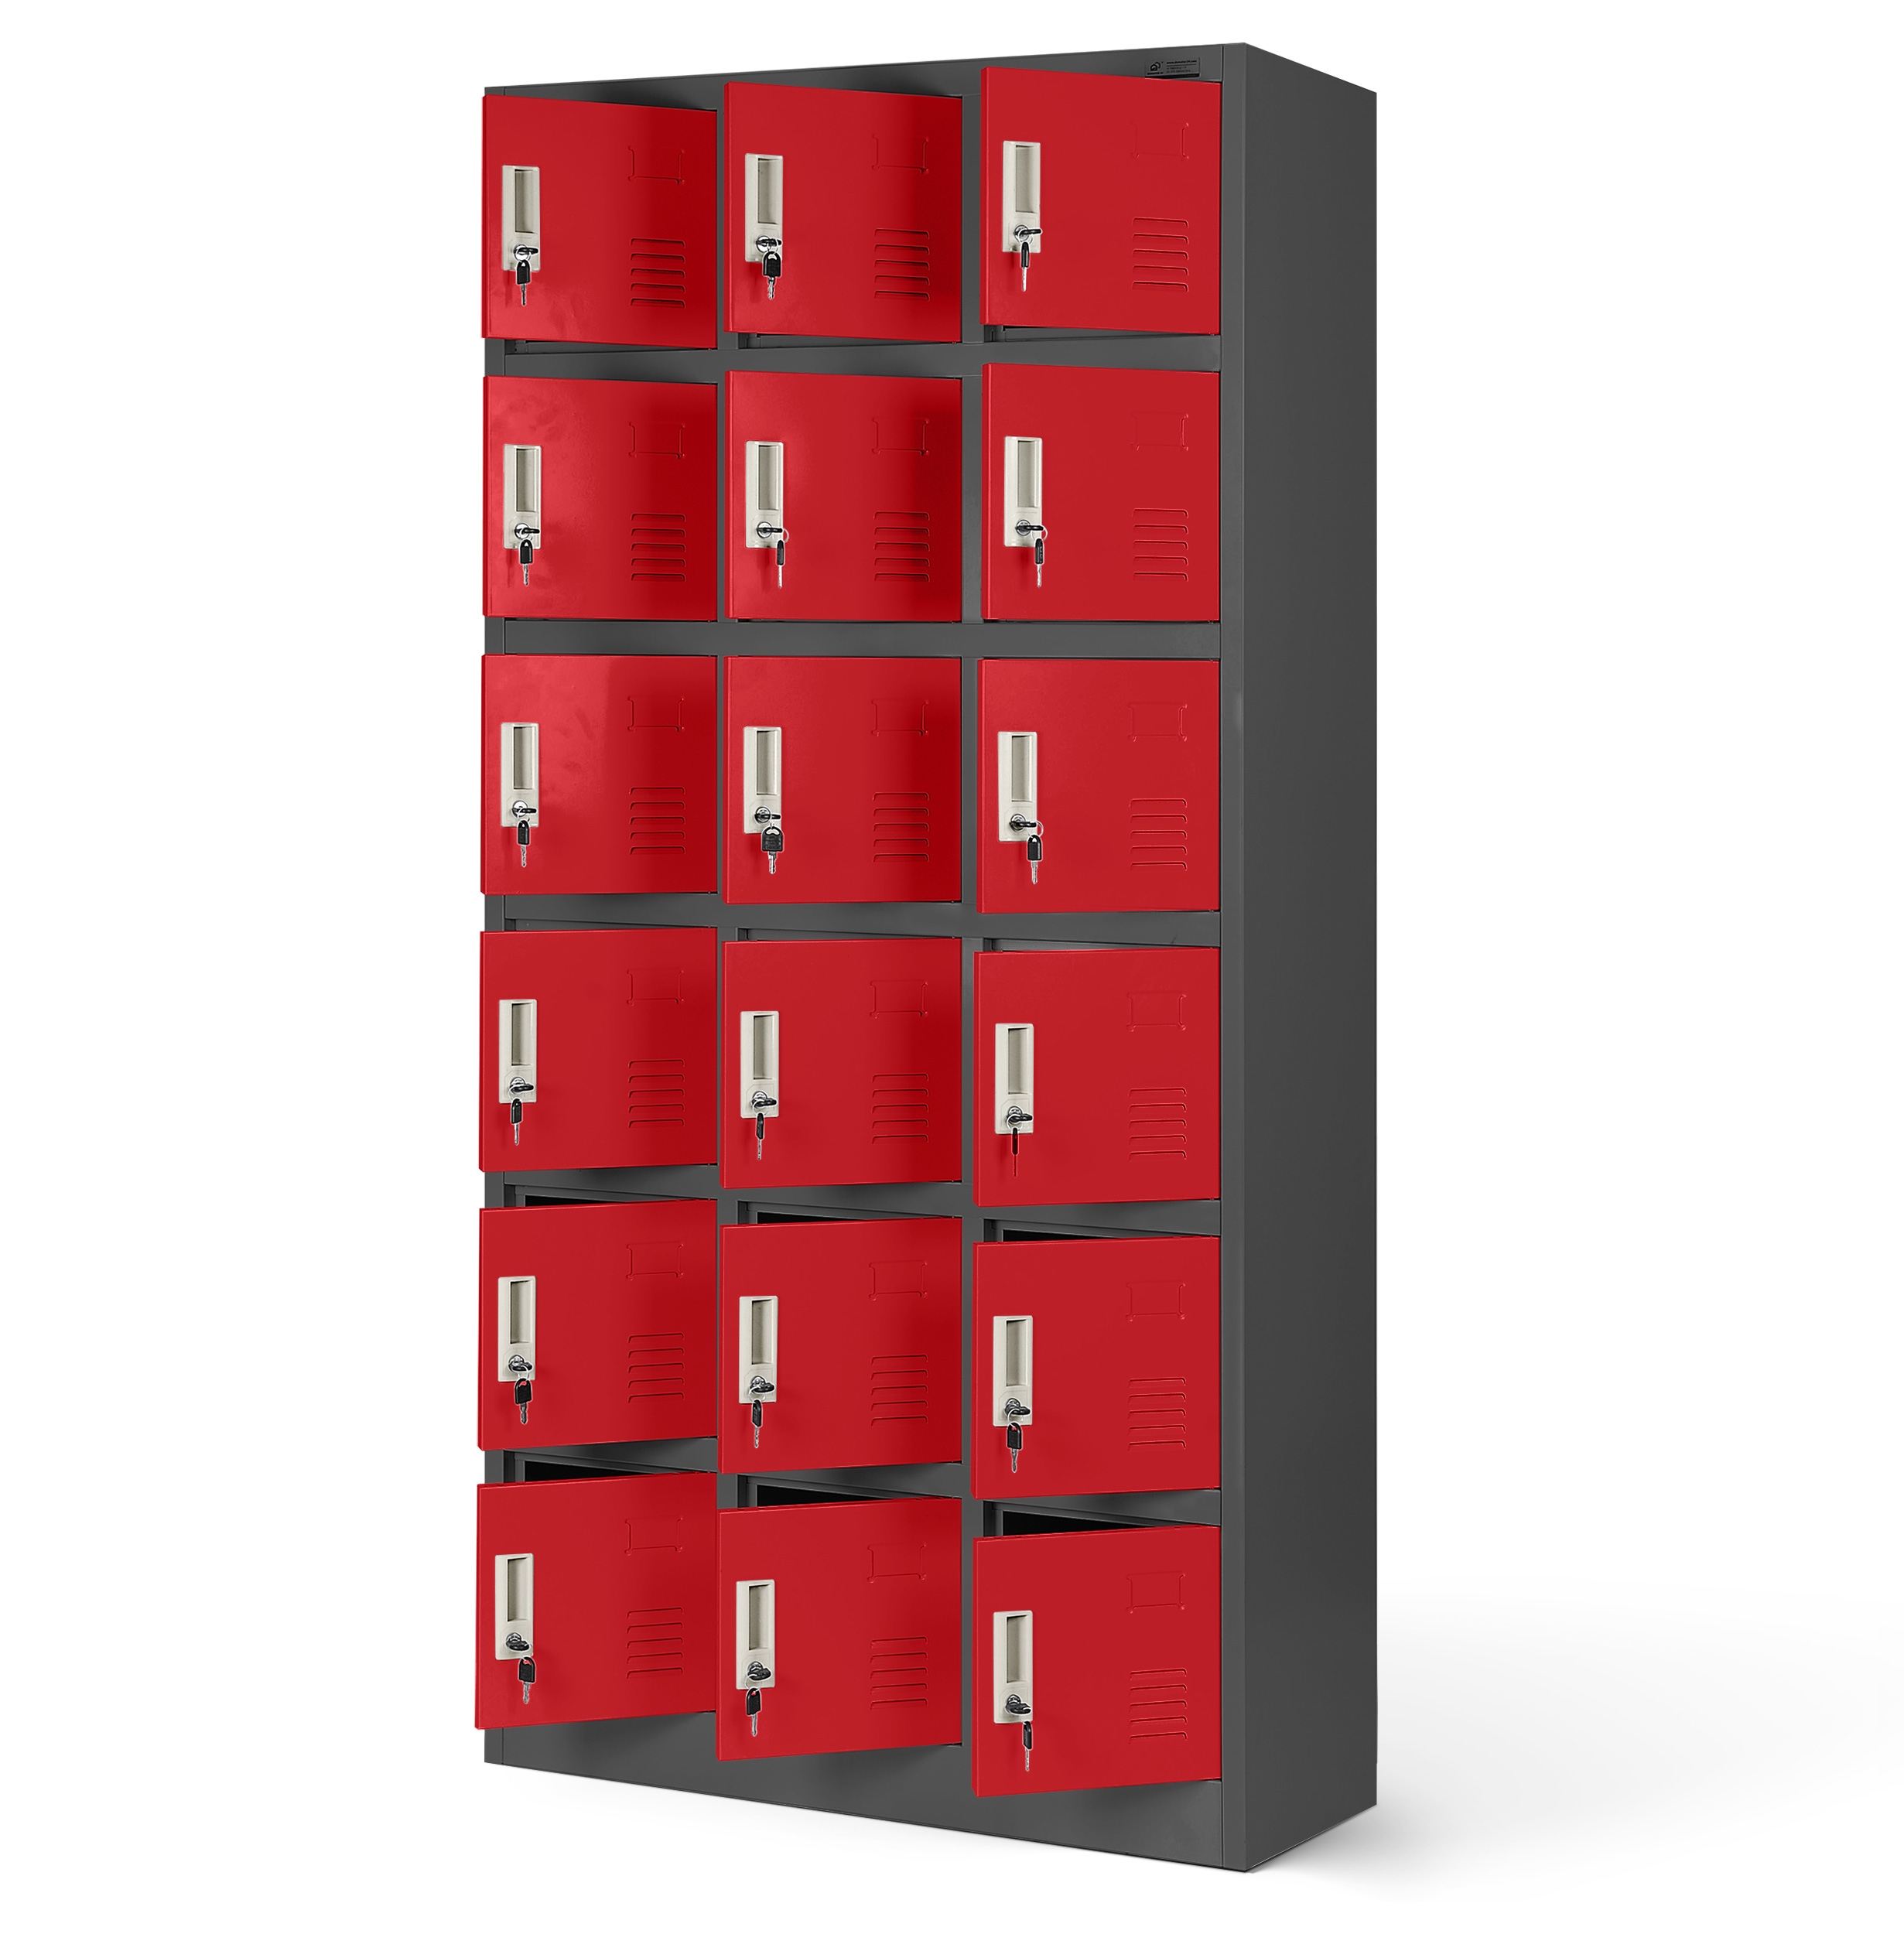 JAN NOWAK model KAROL 900 x 1850 x 400 skrytkowa szafa socjalna: antracytowo-czerwona - Jan Nowak zdjęcie 3